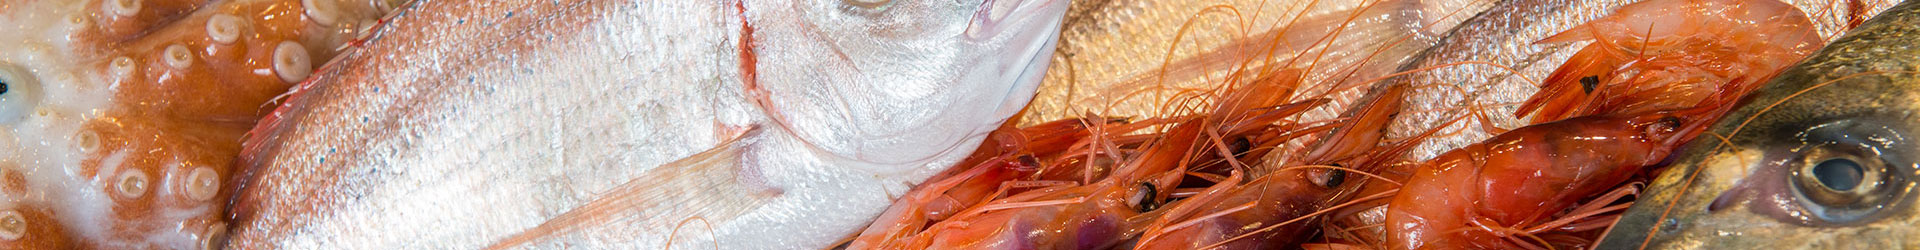 vendita diretta pesce fresco | miglior pesce genova | comprare pesce dai pescatori | pesce abbattuto